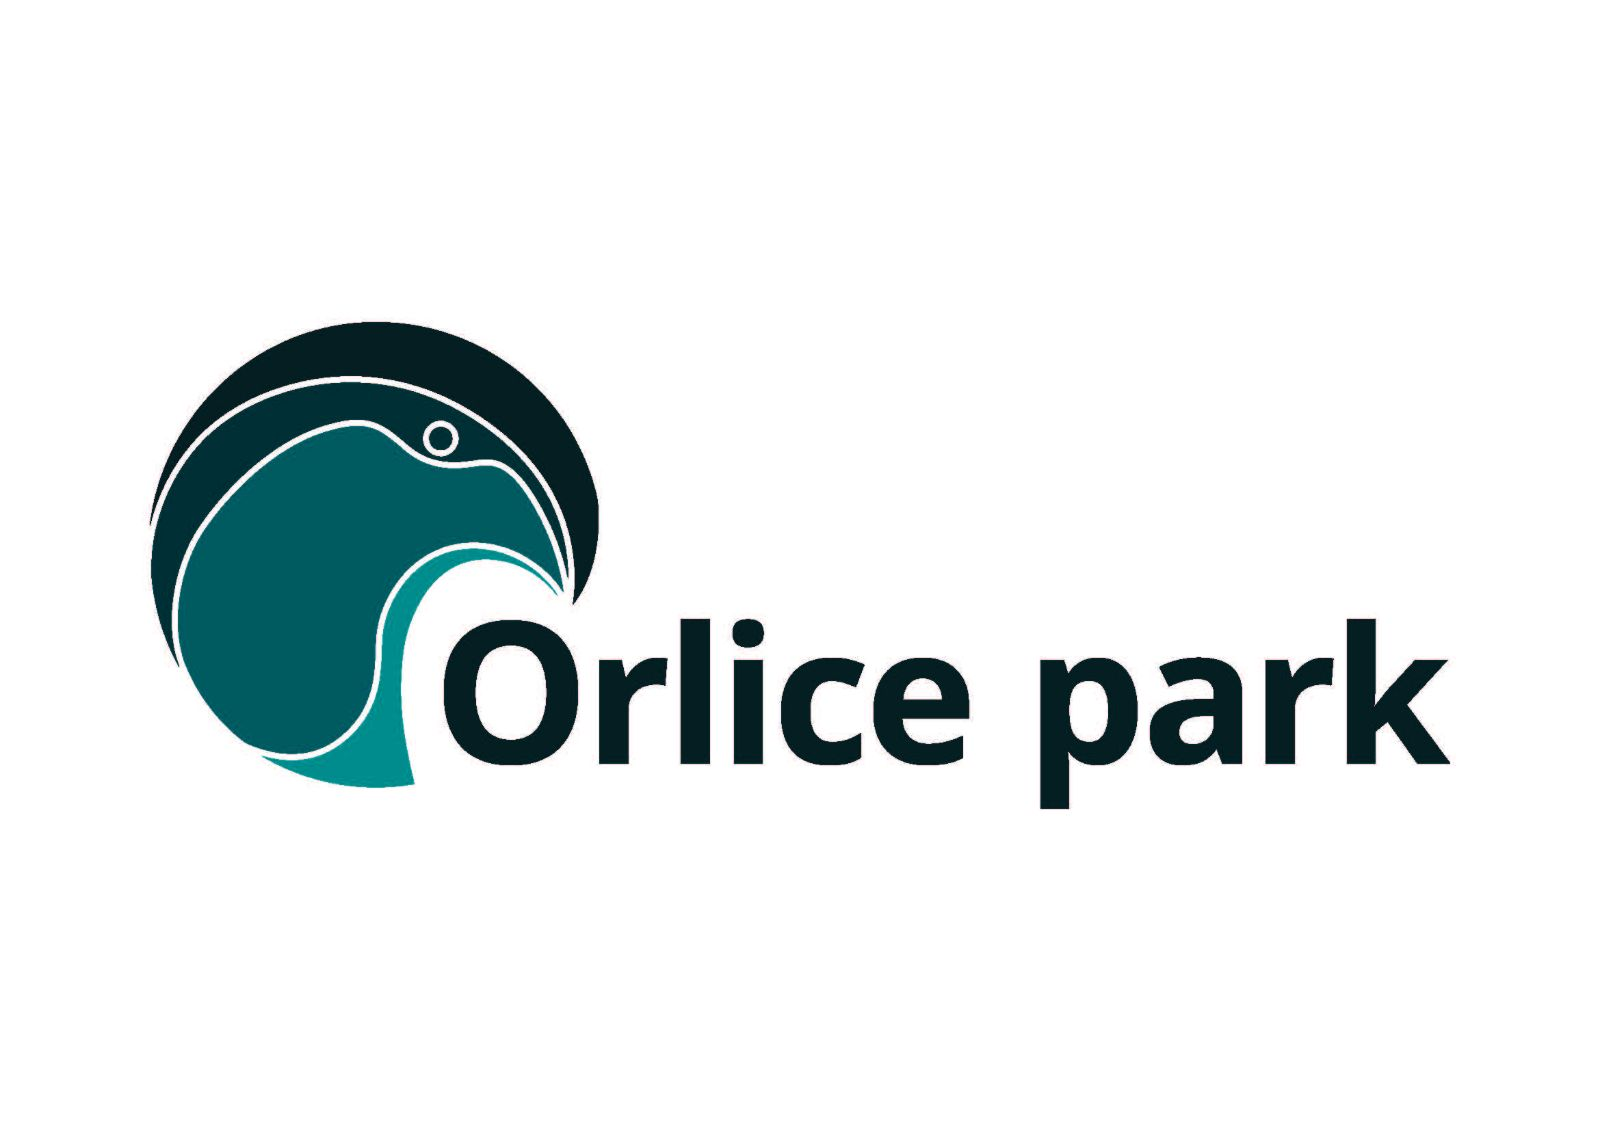 Orlice park